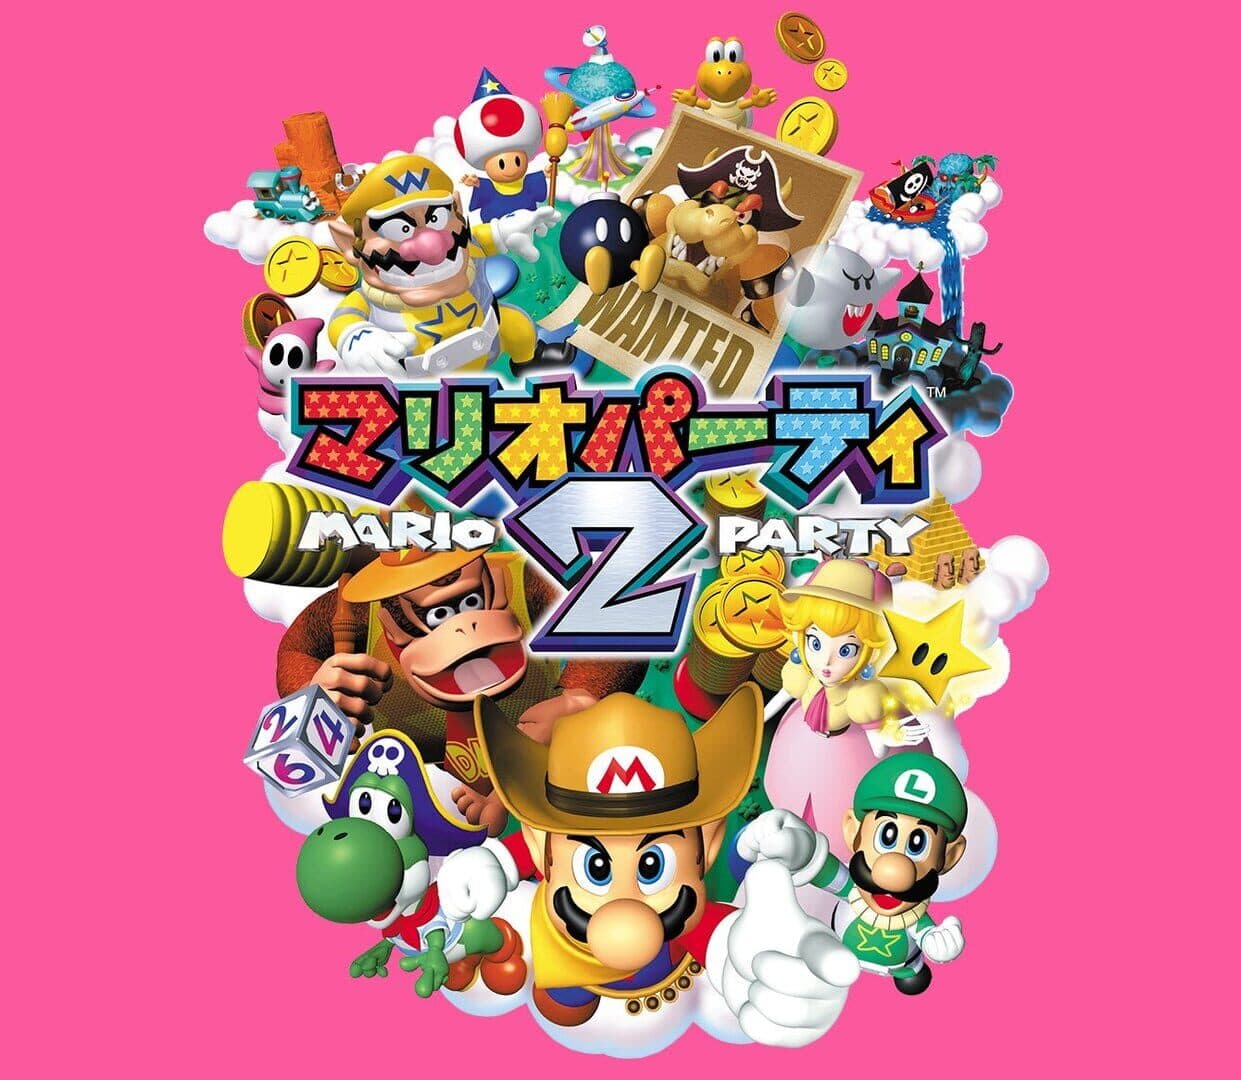 Mario Party 2 Image